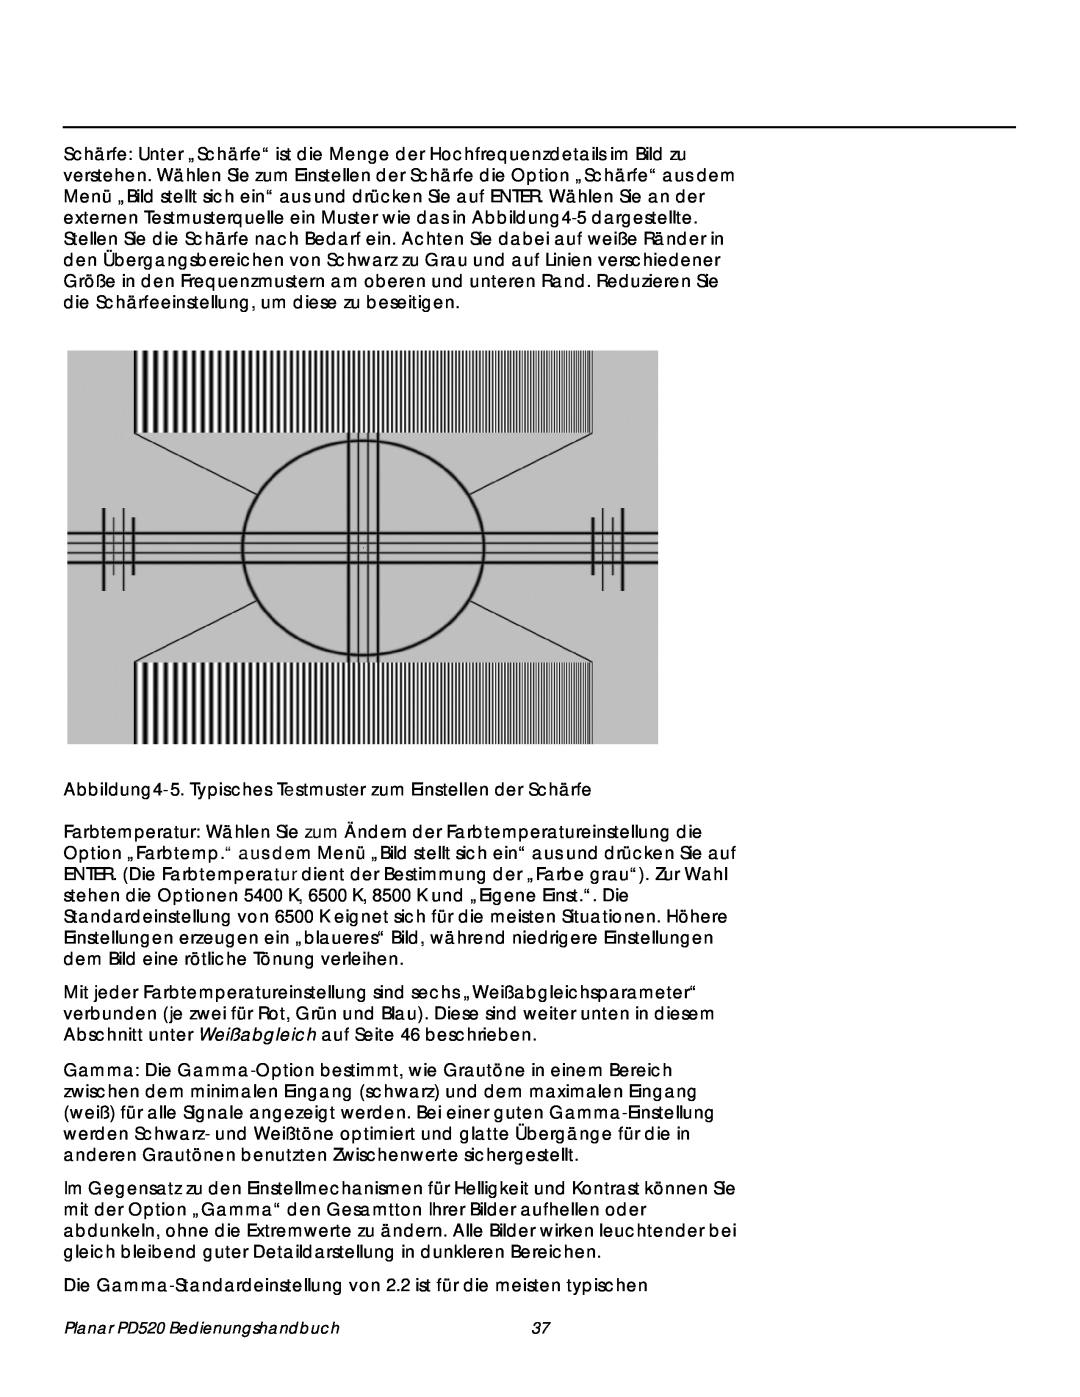 Planar manual Planar PD520 Bedienungshandbuch 